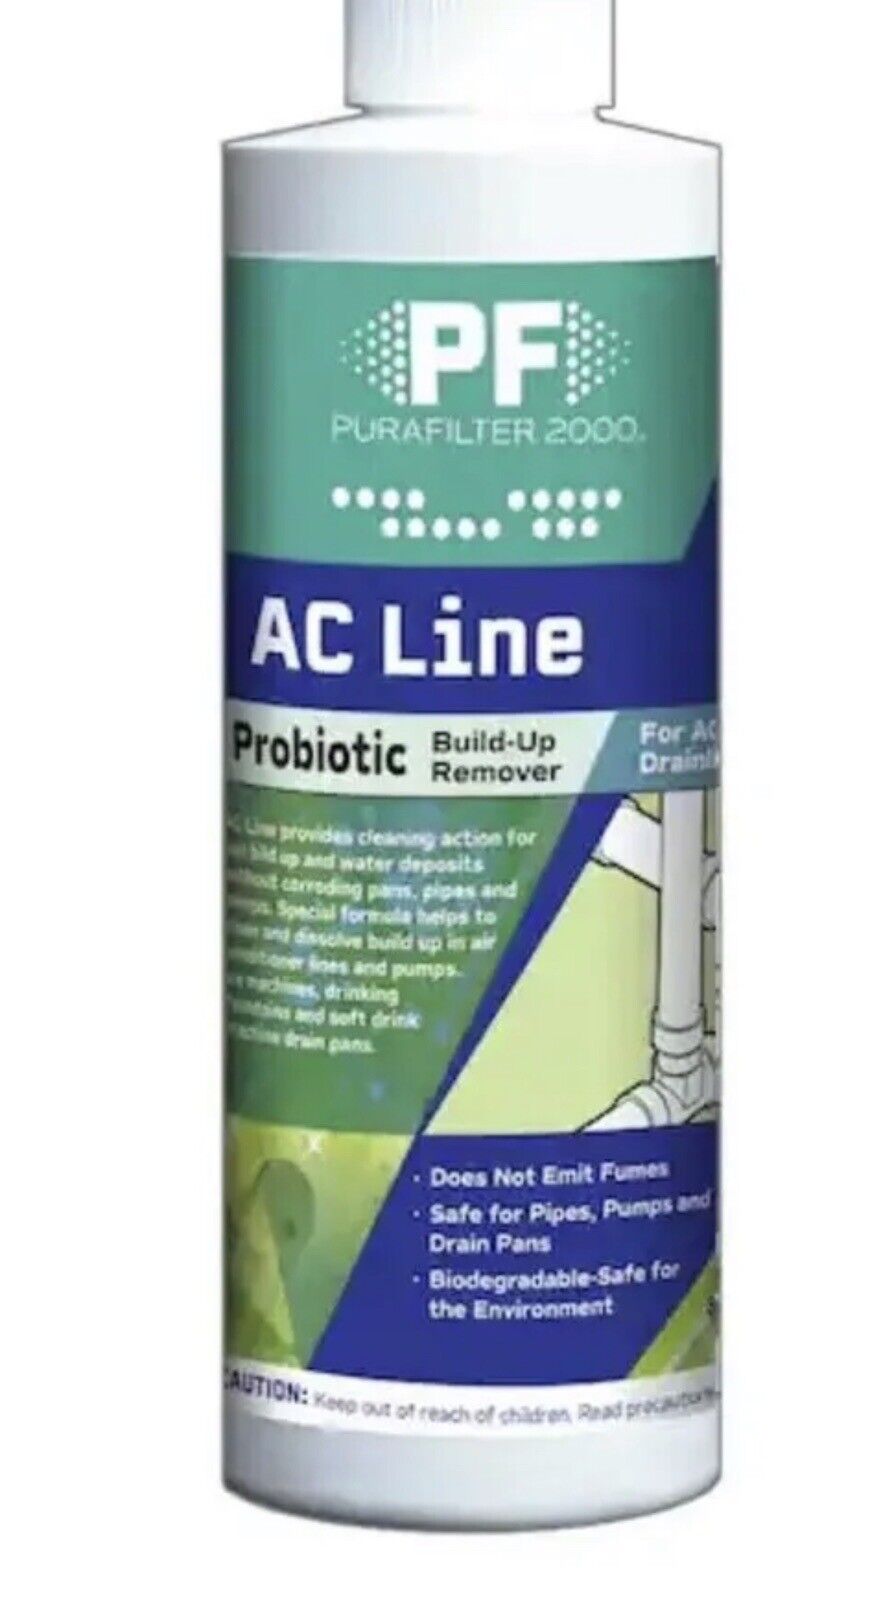 PF Purafilter 2000 Air HVAC Drainline Liquid Probiotic Build-Up Remover